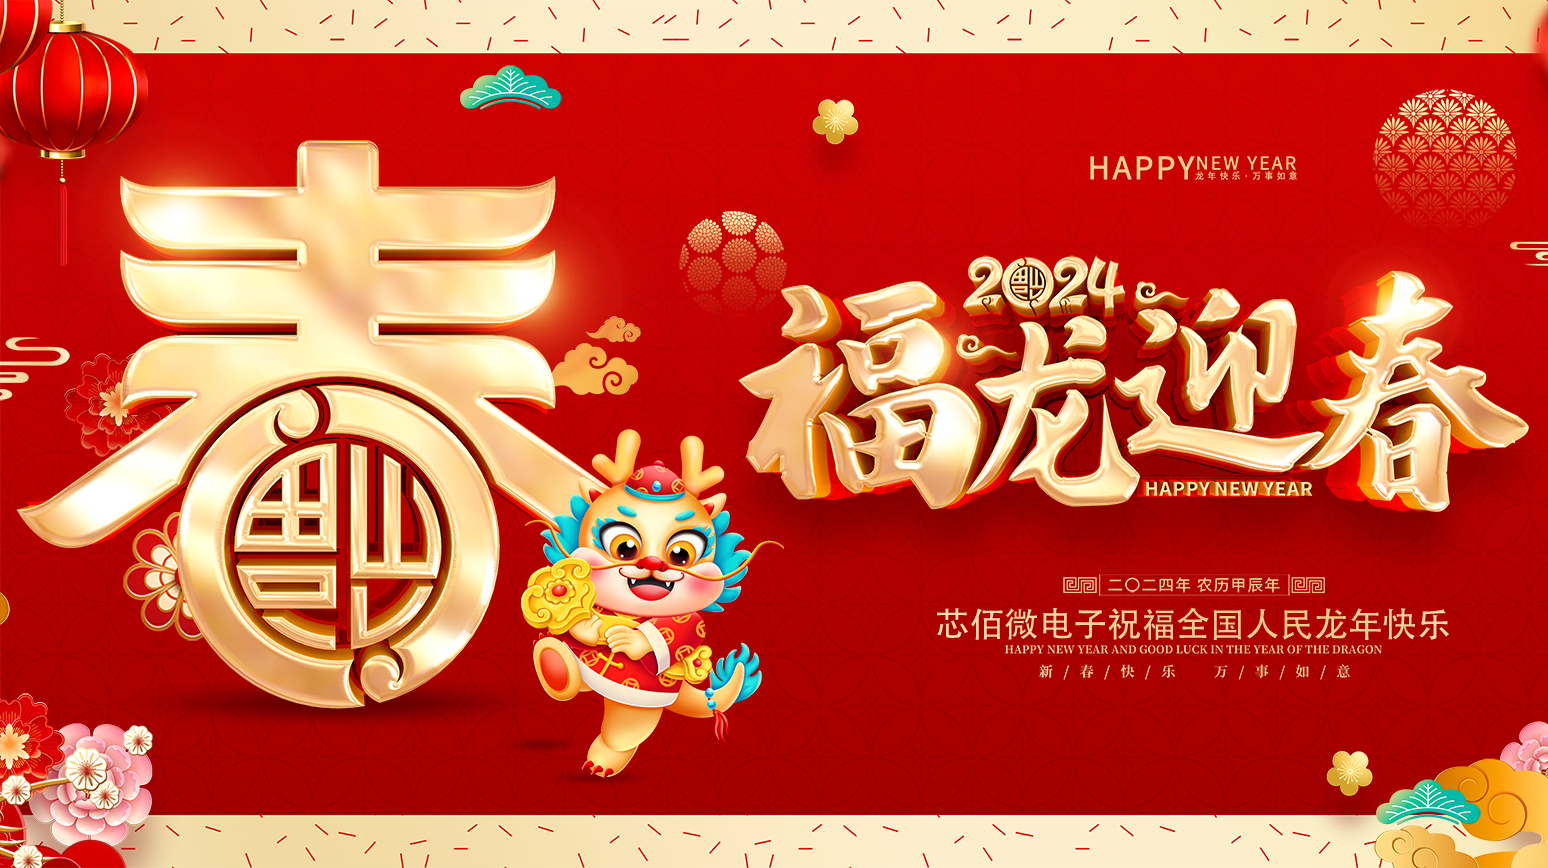 龙腾盛世 瑞气盈门 | Ok138大阳城集团娱乐平台祝您新春快乐！